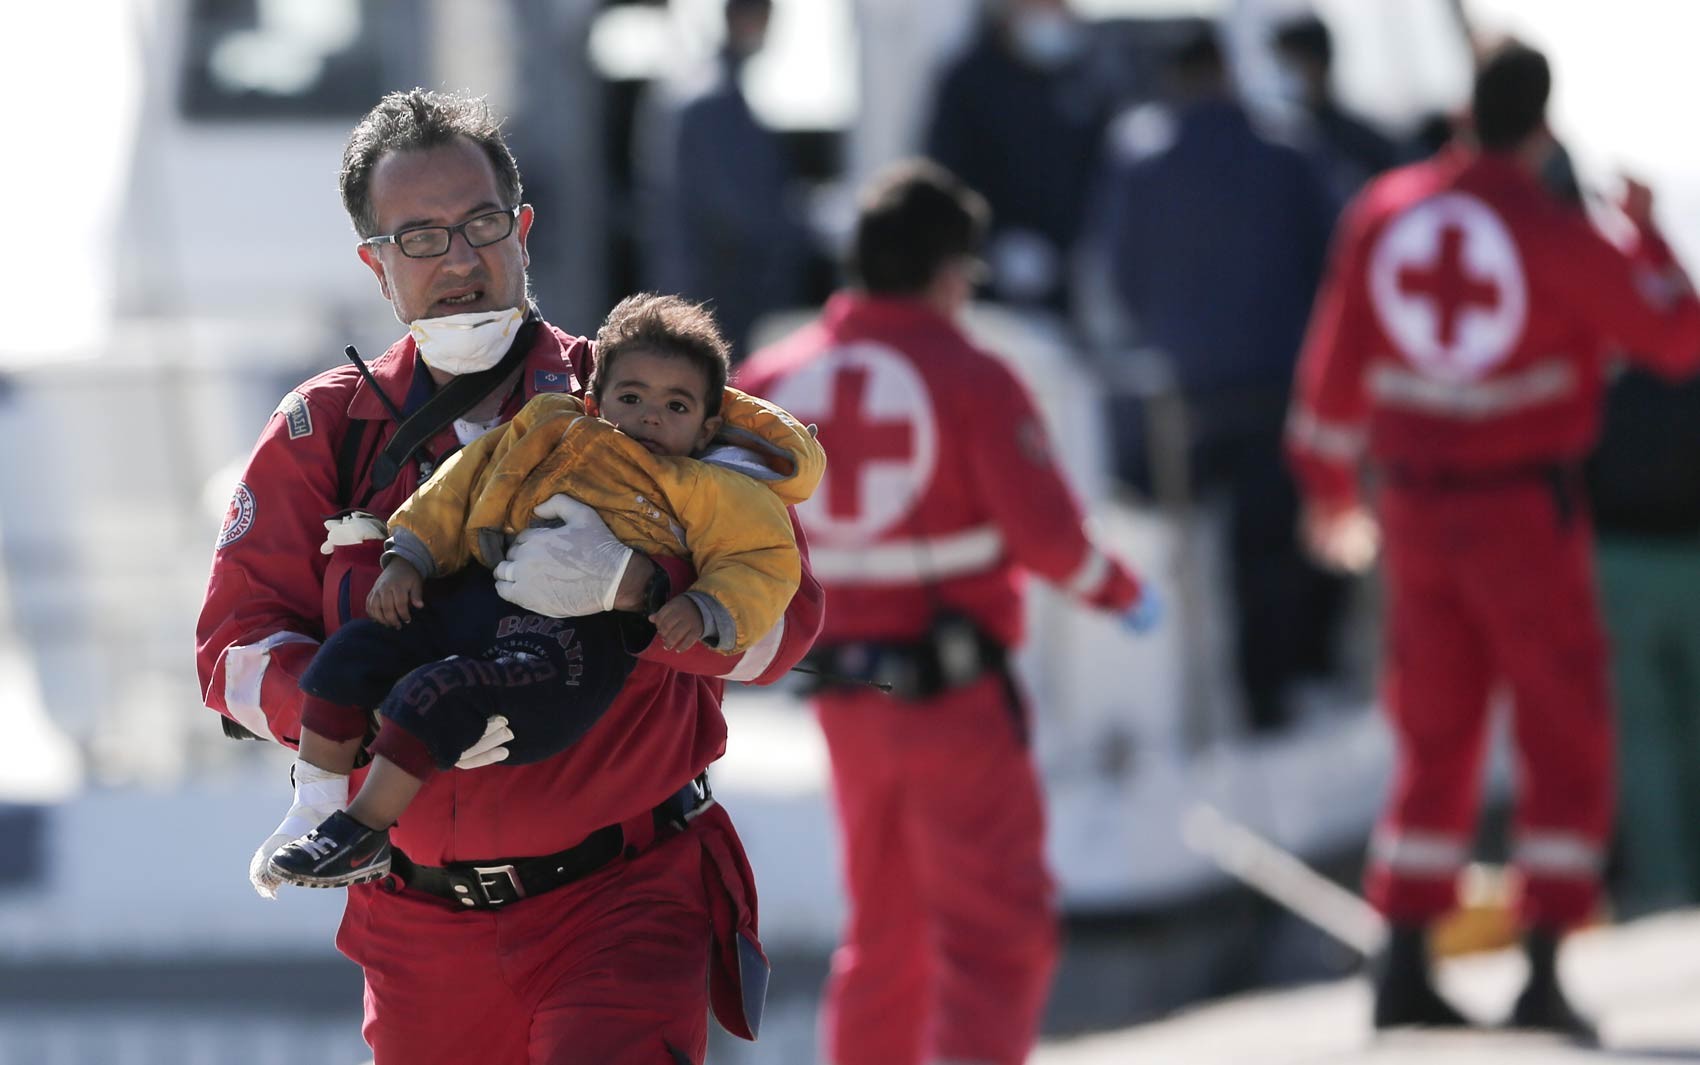 Voluntário da Cruz Vermelha carrega uma criança desembarcada de um navio de frete que levava cerca de 750 refugiados, a maioria síria, que tentavam chegar à Europa, em um porto de Creta, Grécia. O navio parou de funcionar a 70 milhas náuticas do porto (Foto: Petros Giannakouris/AP)